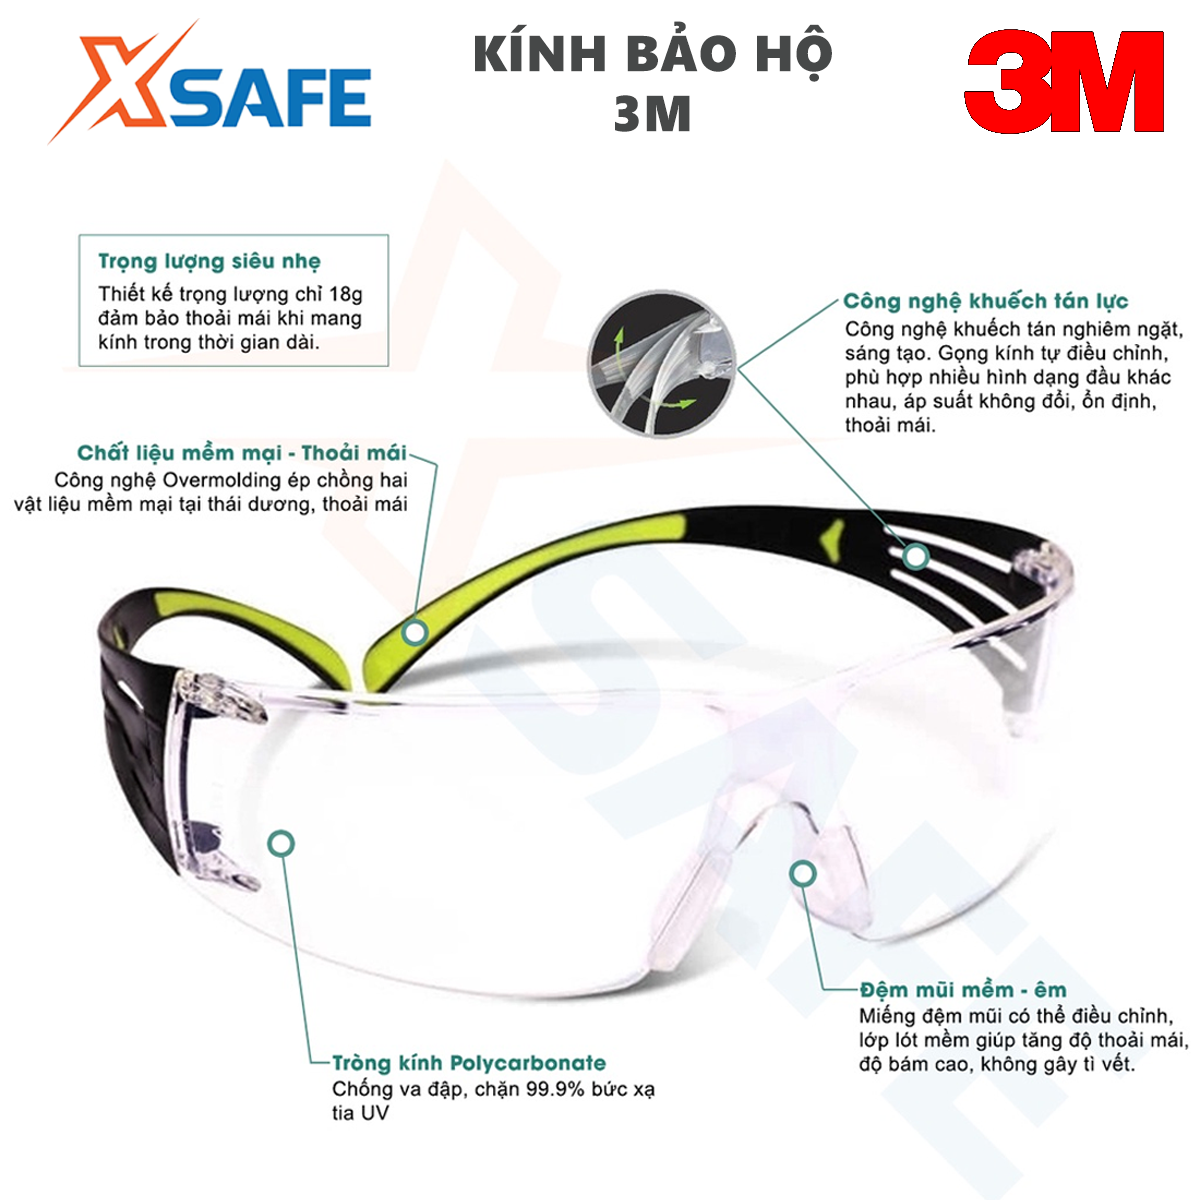 Kính bảo hộ 3M SF401AF kính chống bụi chống tia UV chống đọng sương chống trầy xước (màu trắng) 